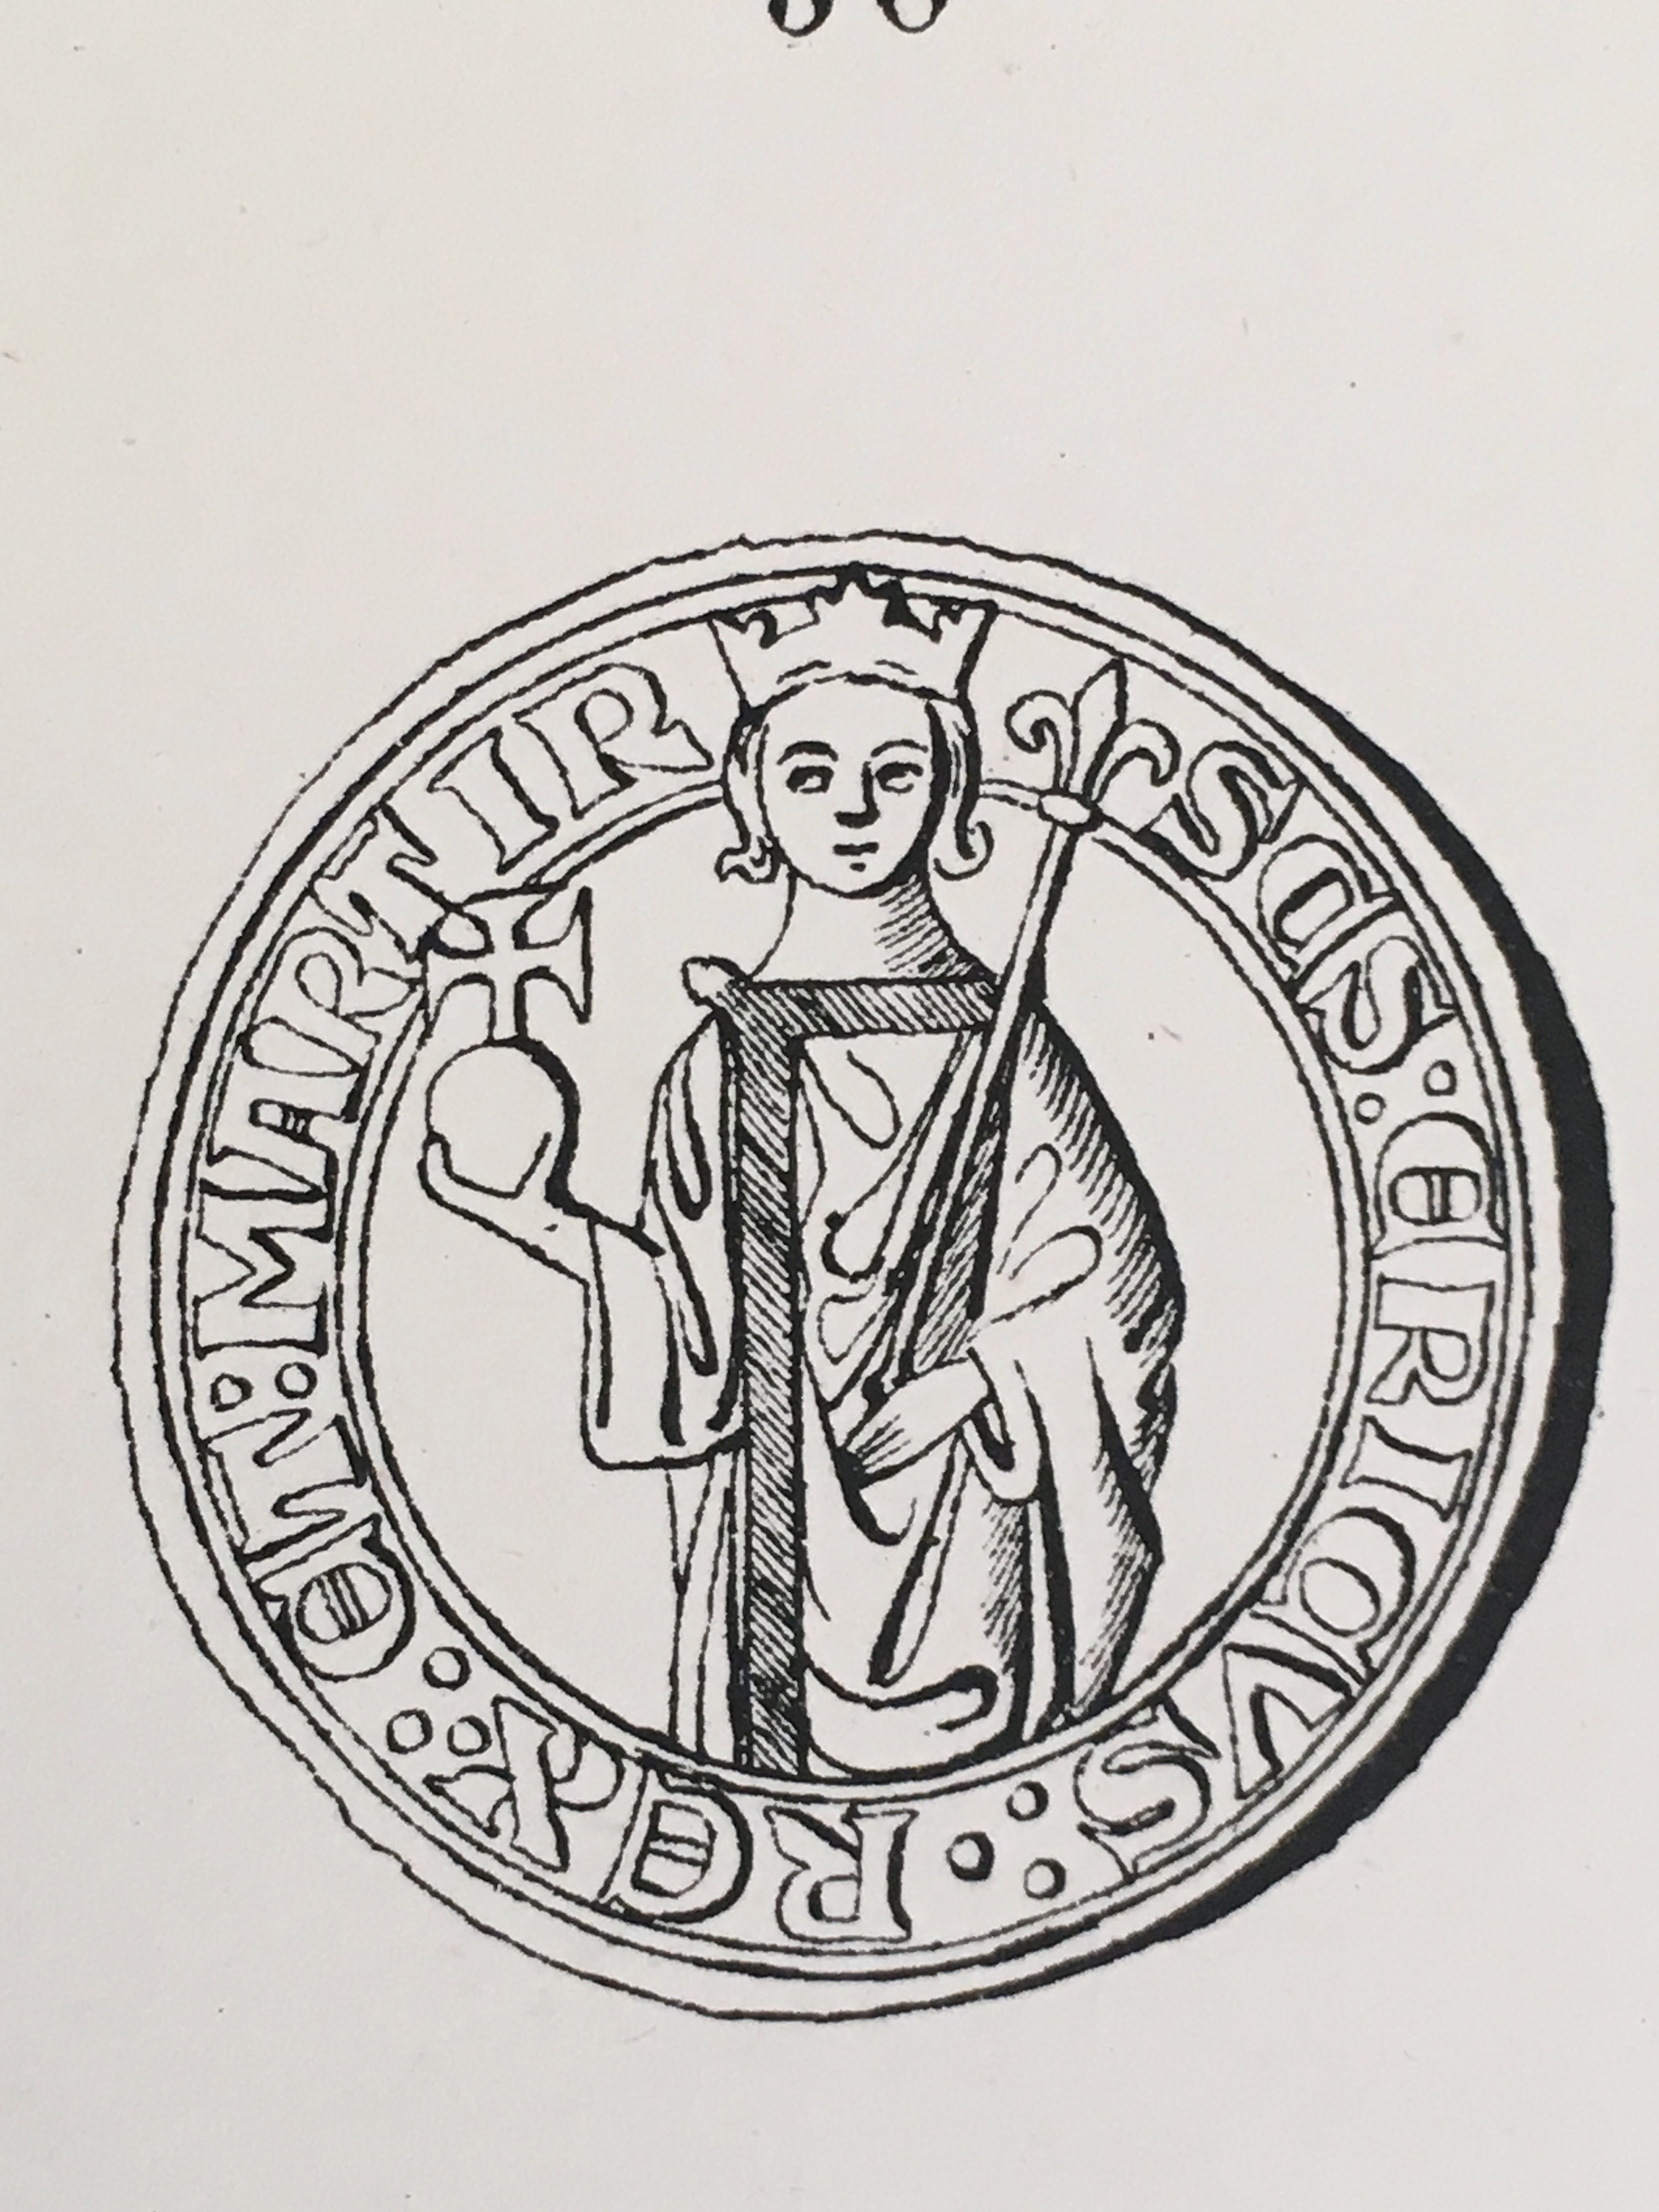 Uppsala domkapitels kontrasigill från 1275 som visar Erik den Helige.